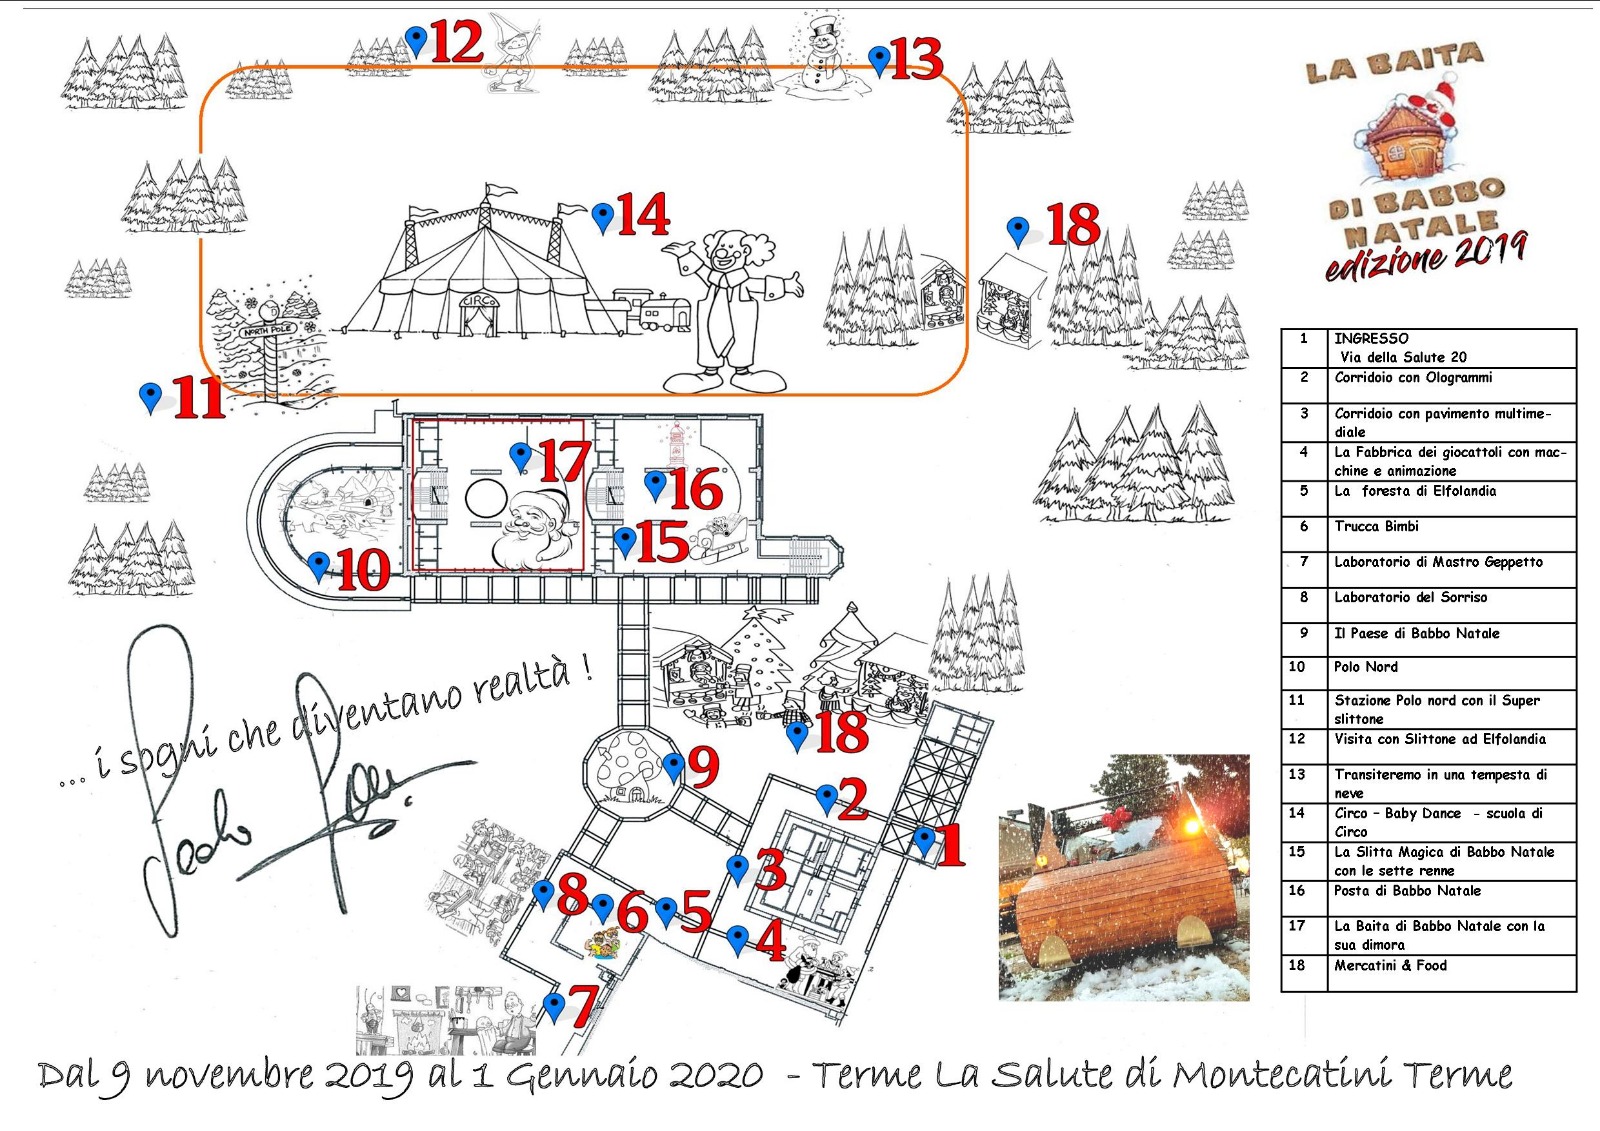 Mappa Di Babbo Natale.La Baita Di Babbo Natale A Montecatini Terme Vacanze 2019 2020